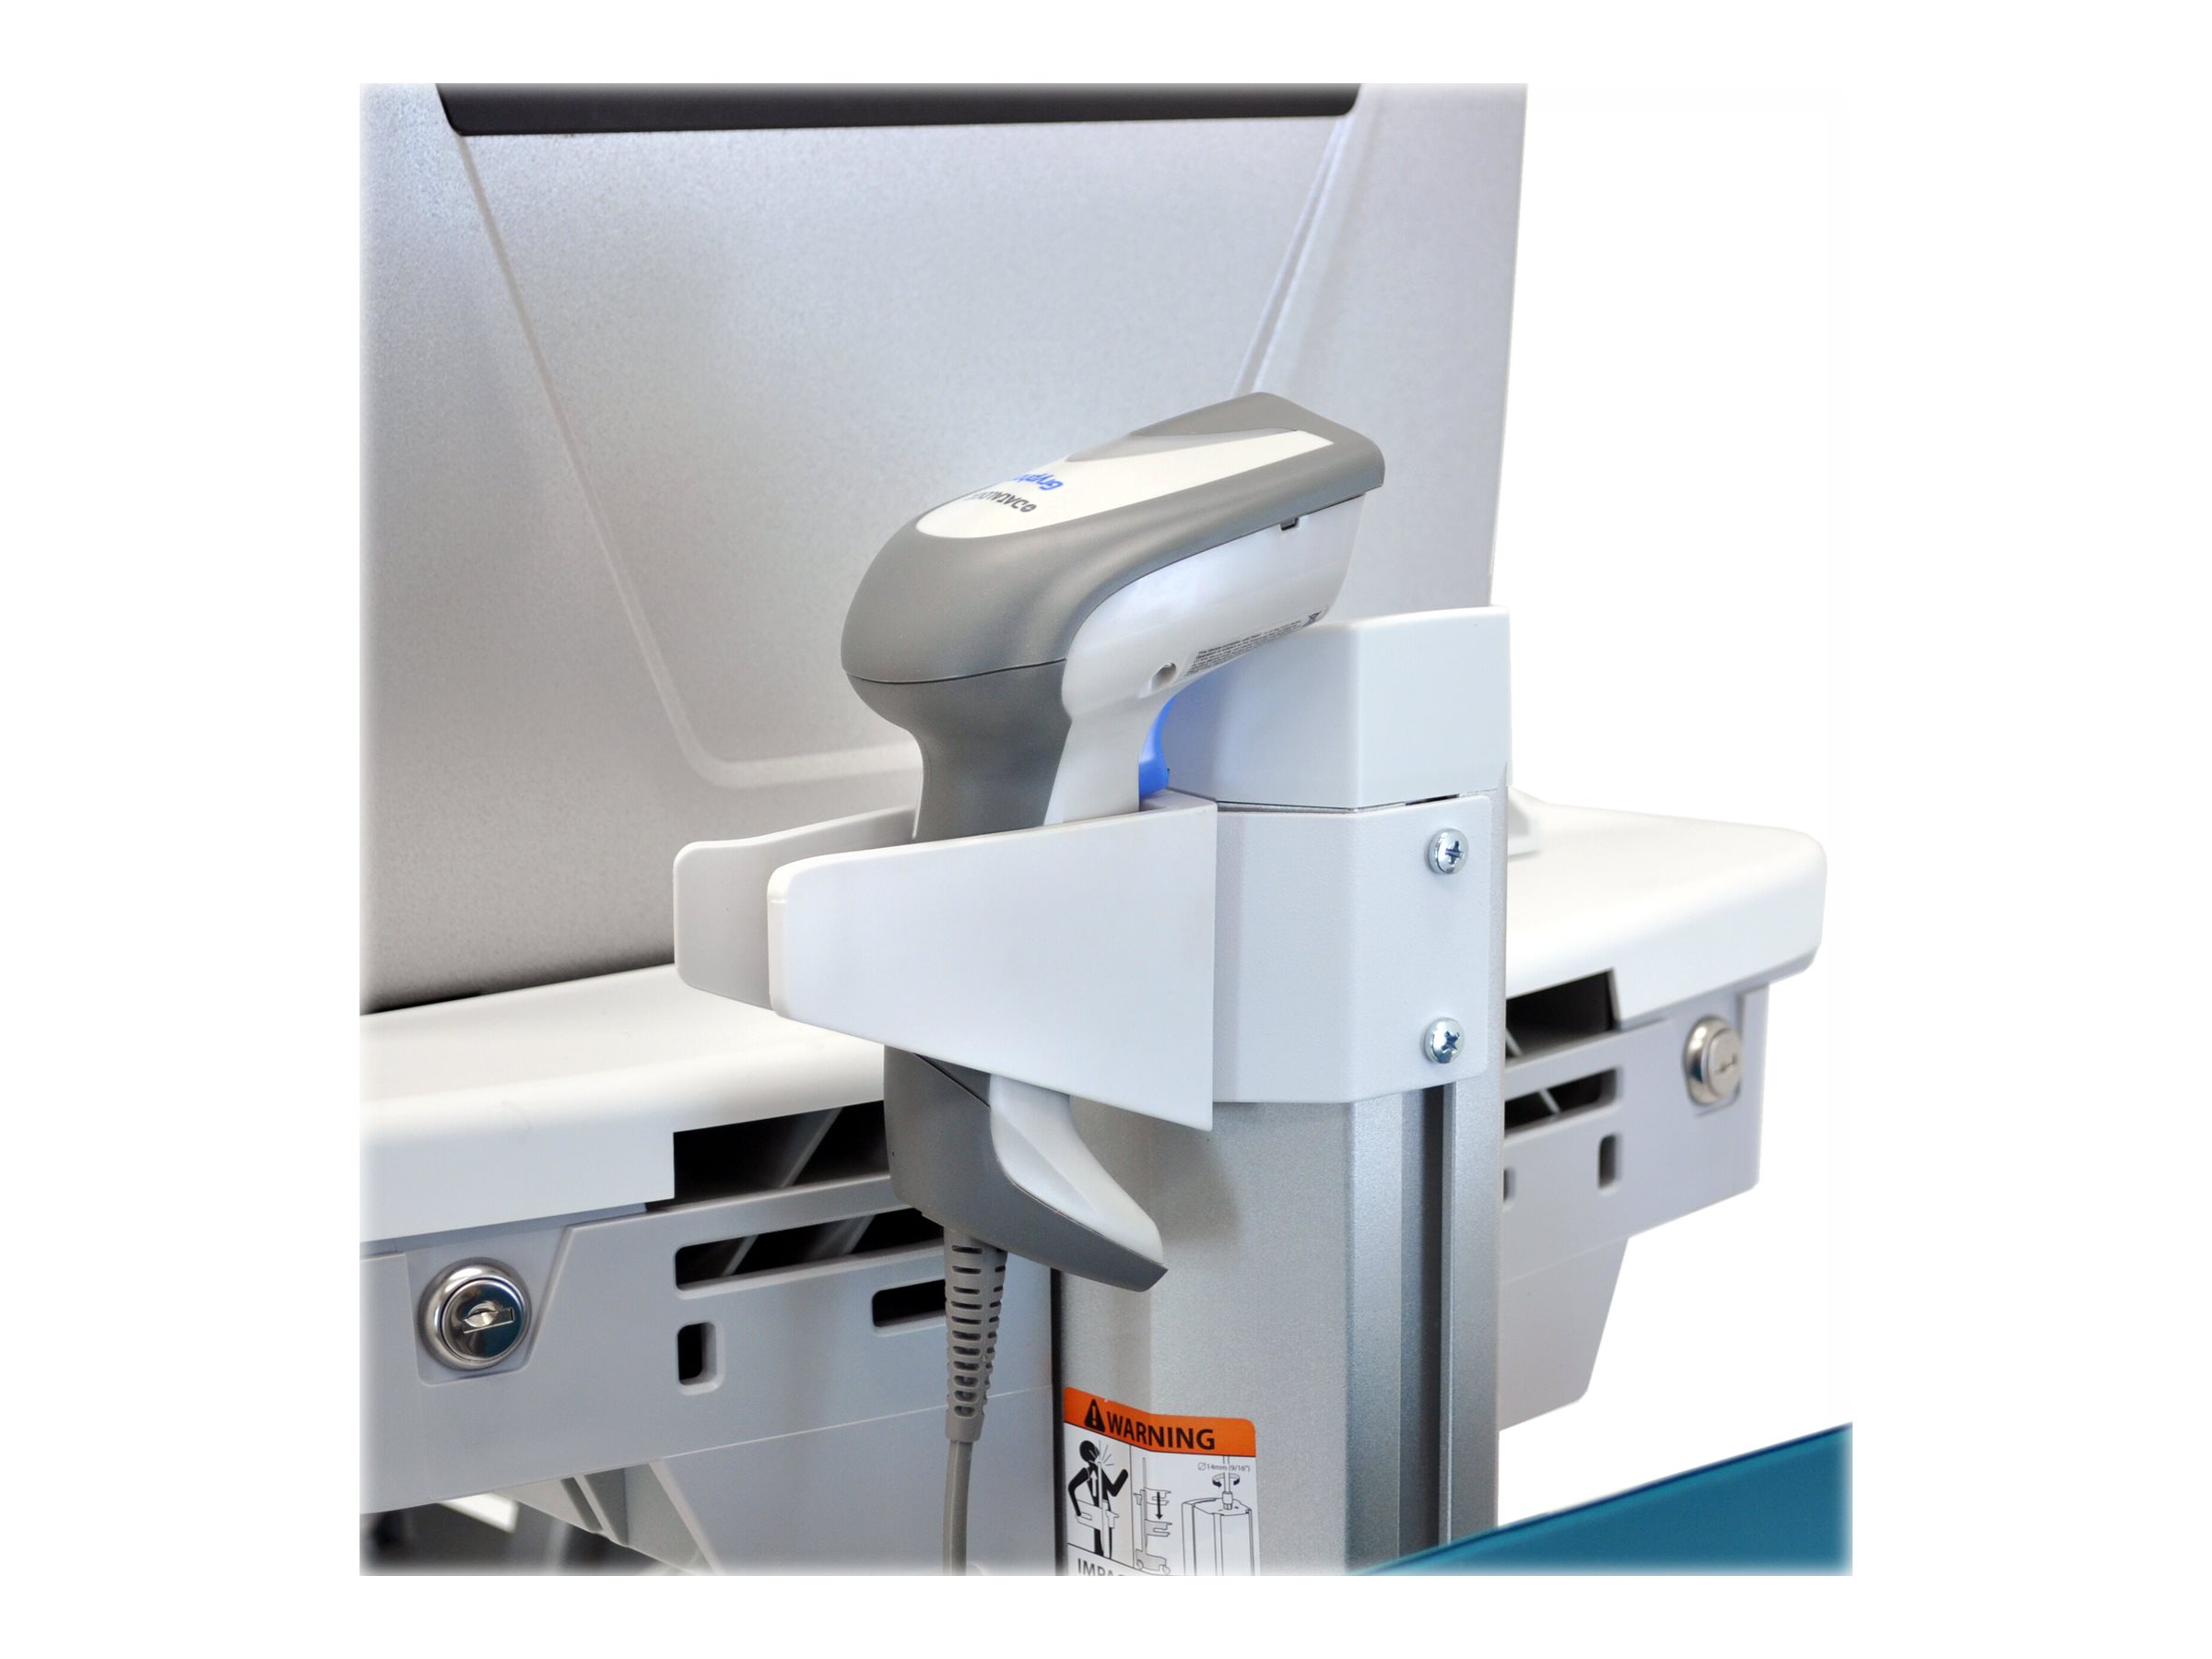 Ergotron - Chariot - pour écran LCD/équipement PC - médical - plastique, aluminium, acier zingué - gris, blanc, aluminium poli - Taille d'écran : jusqu'à 24 pouces - SV41-6200-0 - Accessoires pour scanner